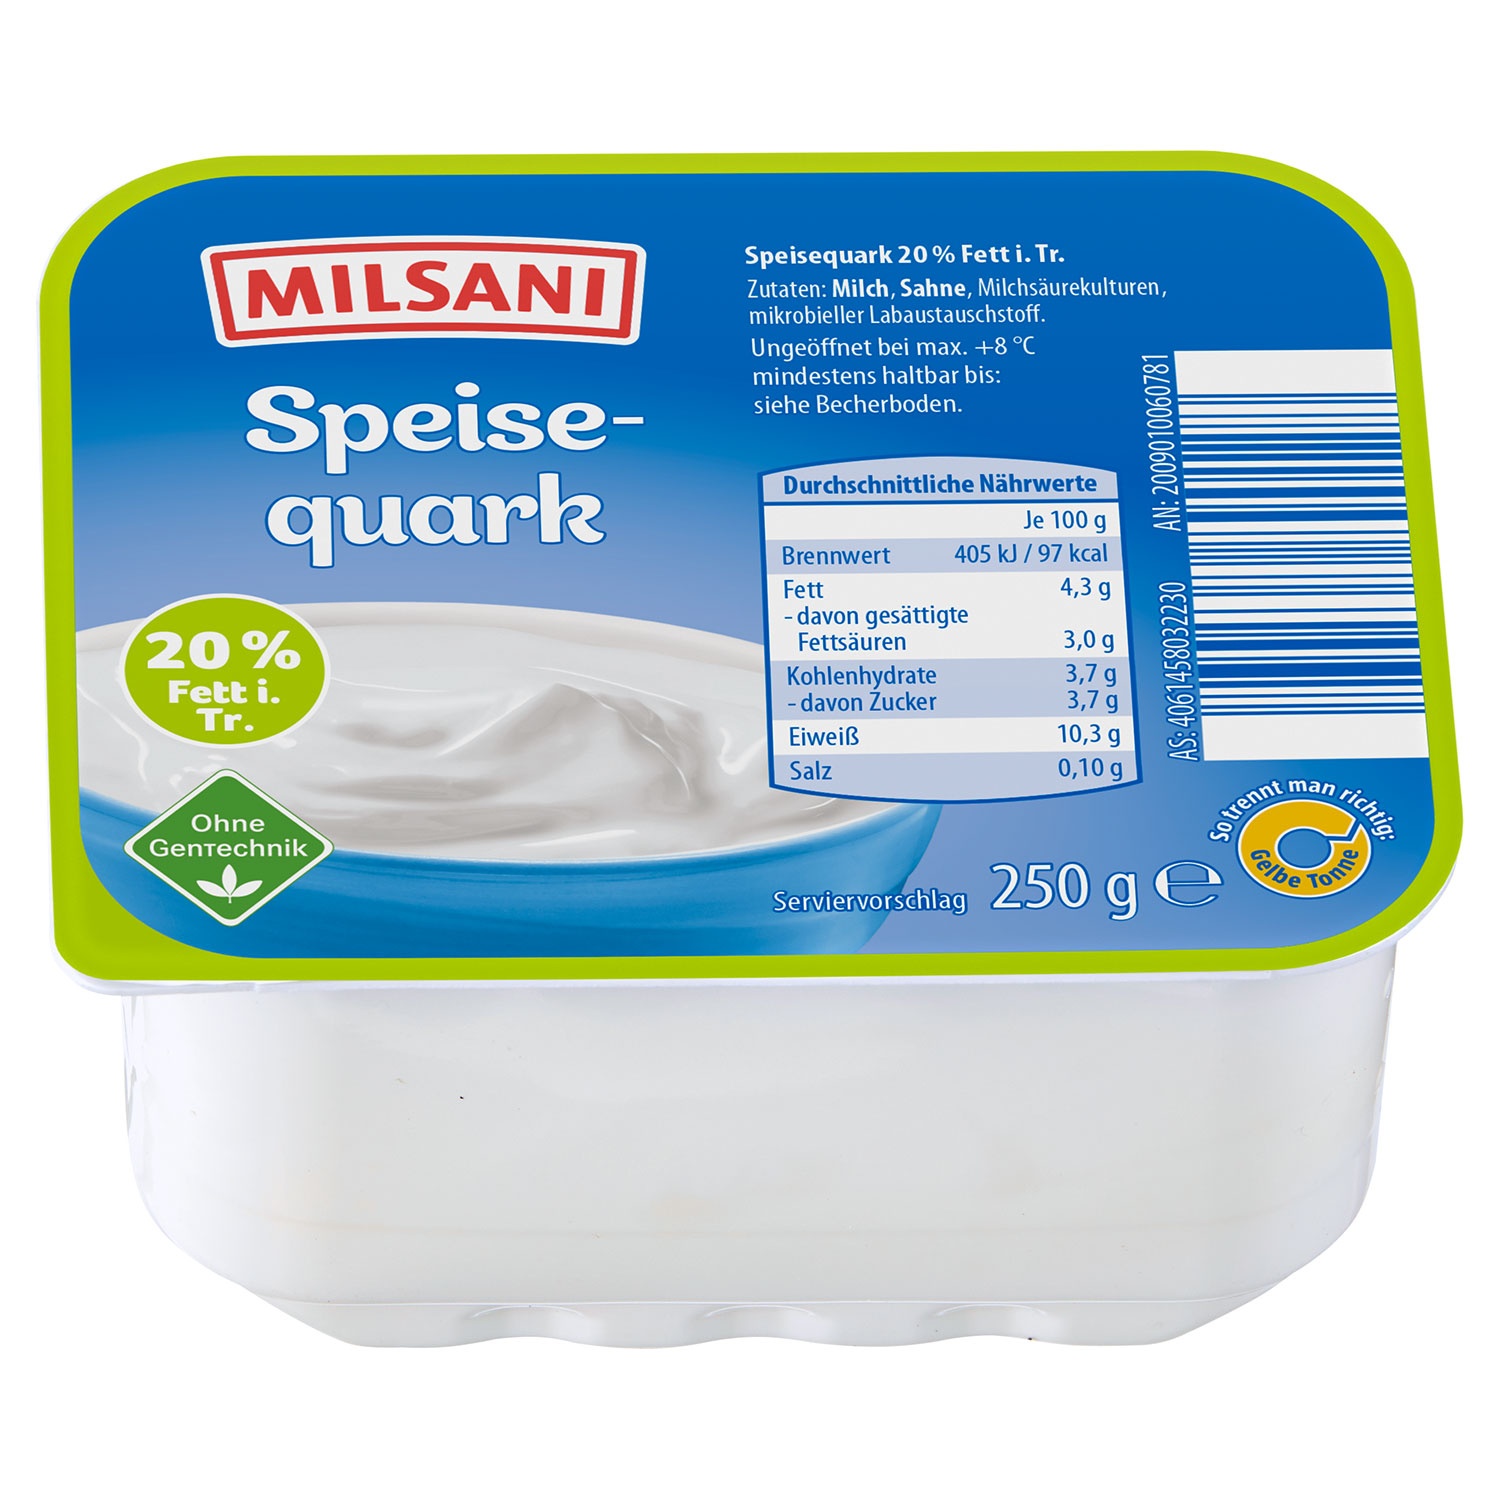 MILSANI Speisequark 20 % 250 g